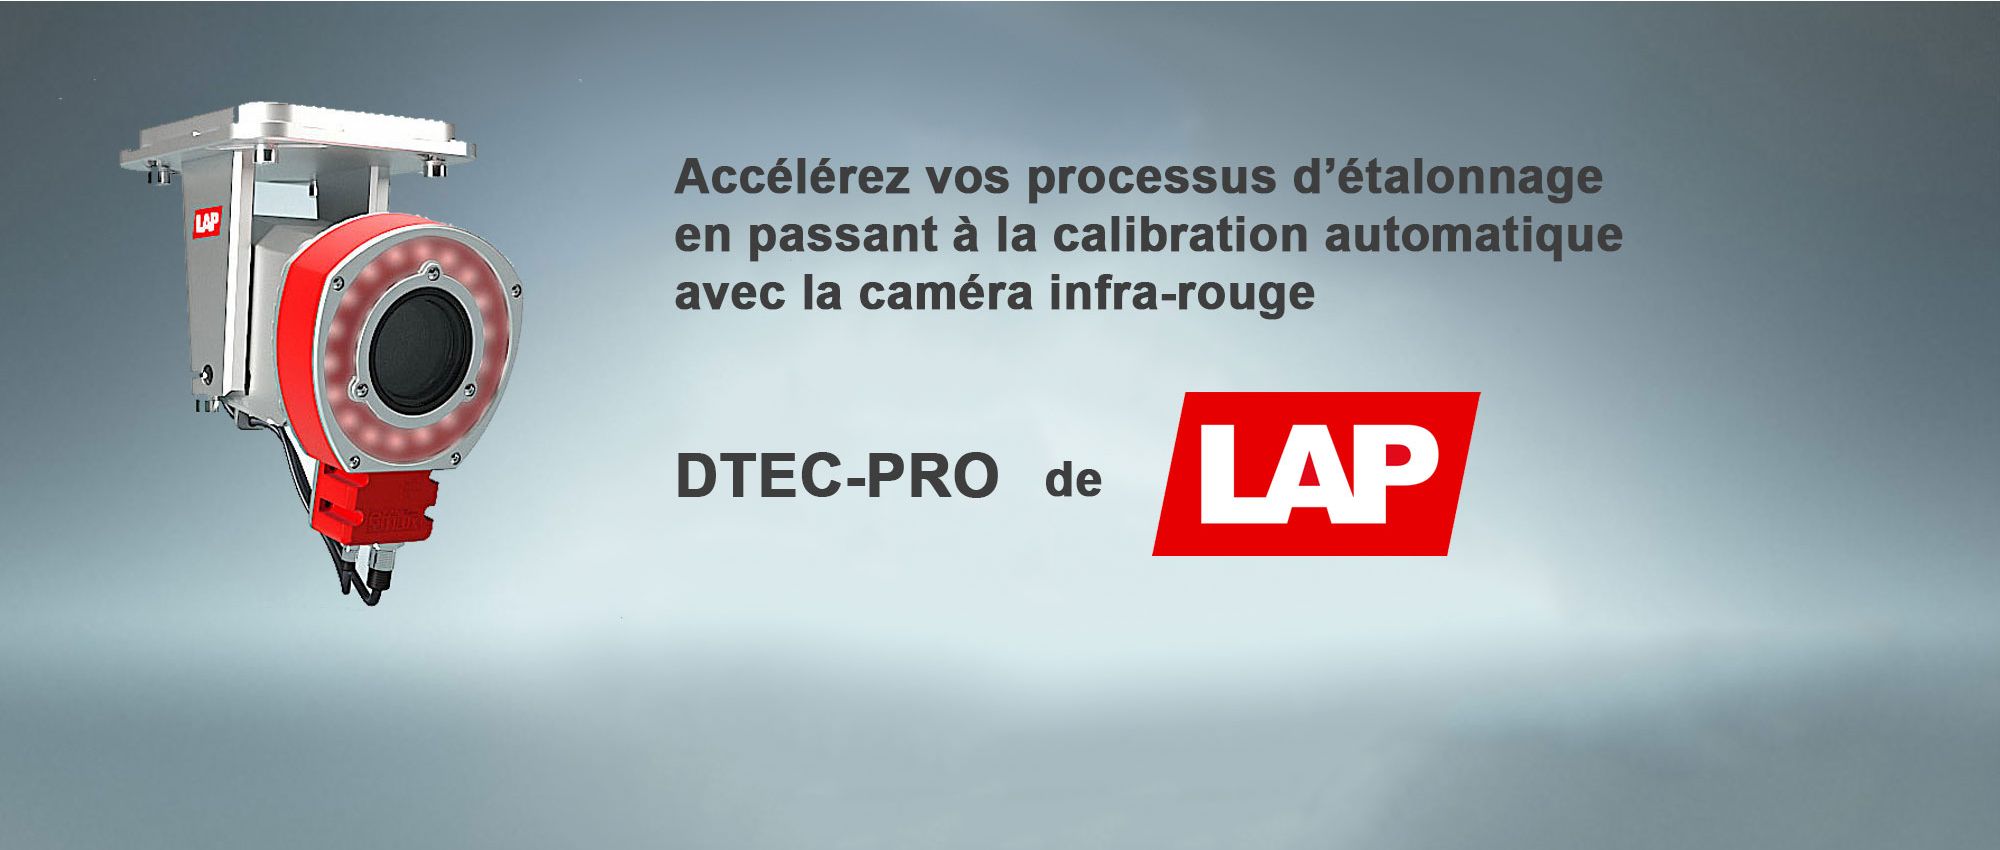 Caméra DTEC-PRO de LAP Laser